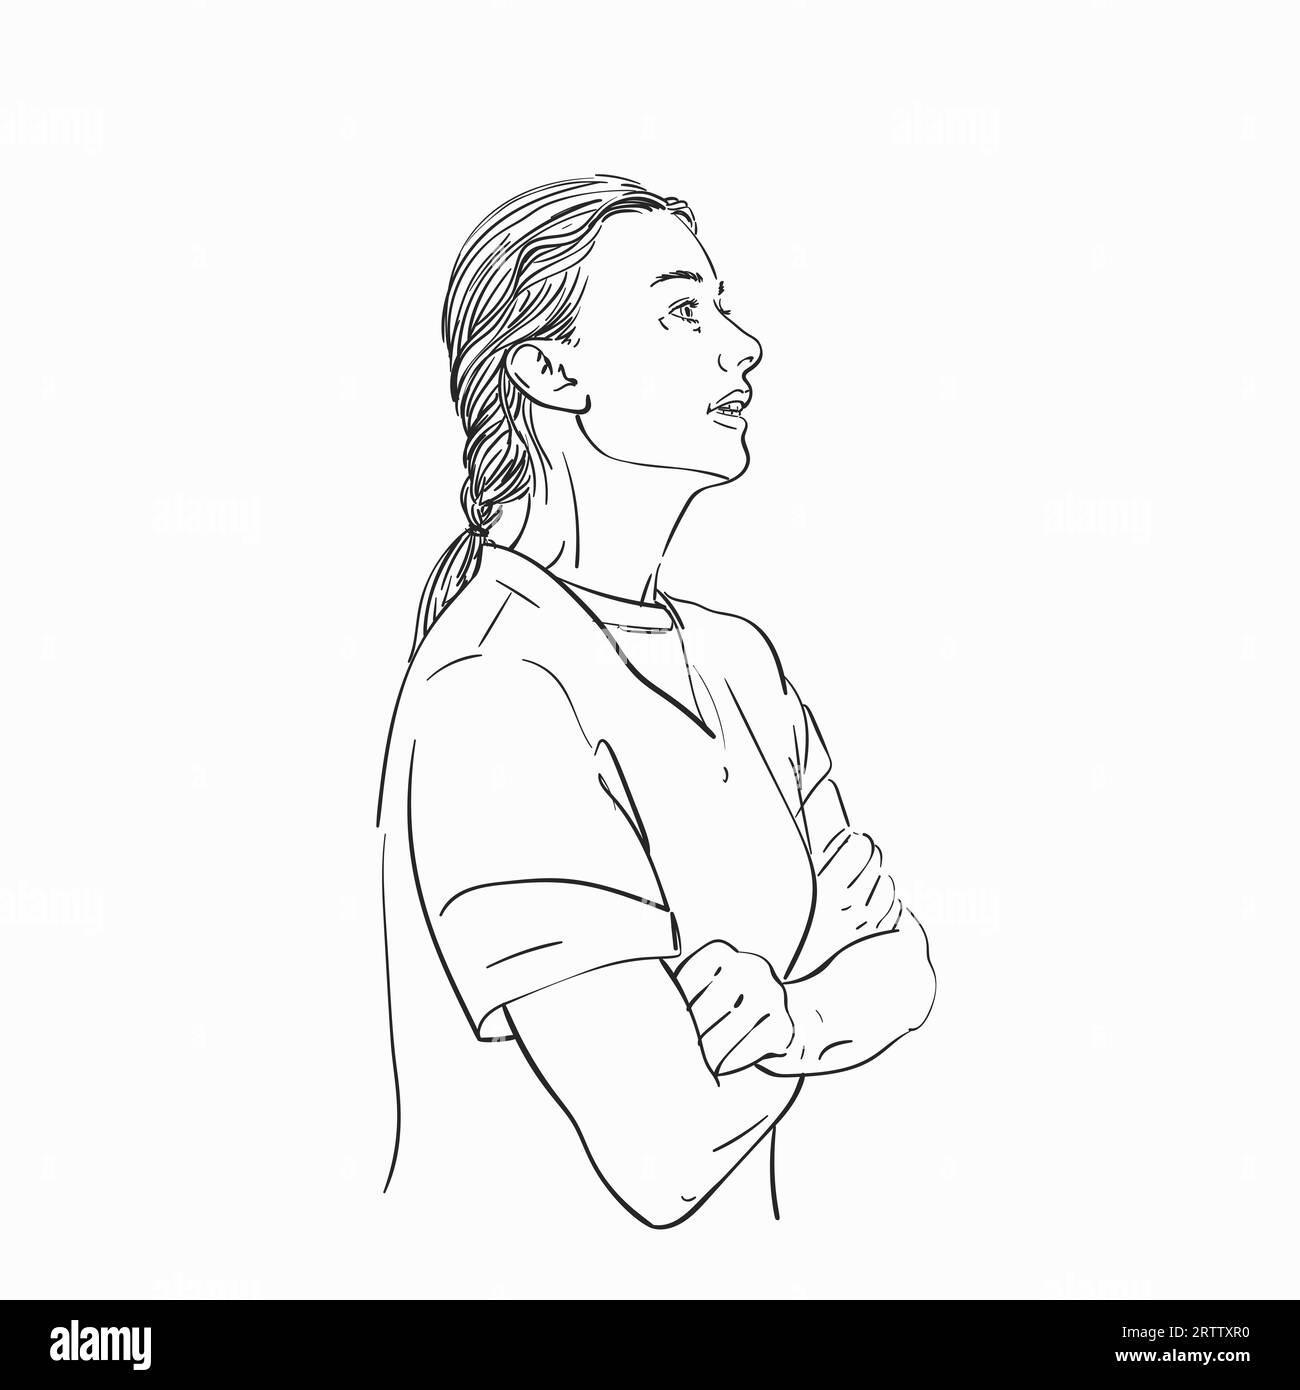 Croquis d'une femme slave de profil avec la bouche ouverte debout avec les bras croisés sur sa poitrine, illustration dessinée à la main Vector Illustration de Vecteur